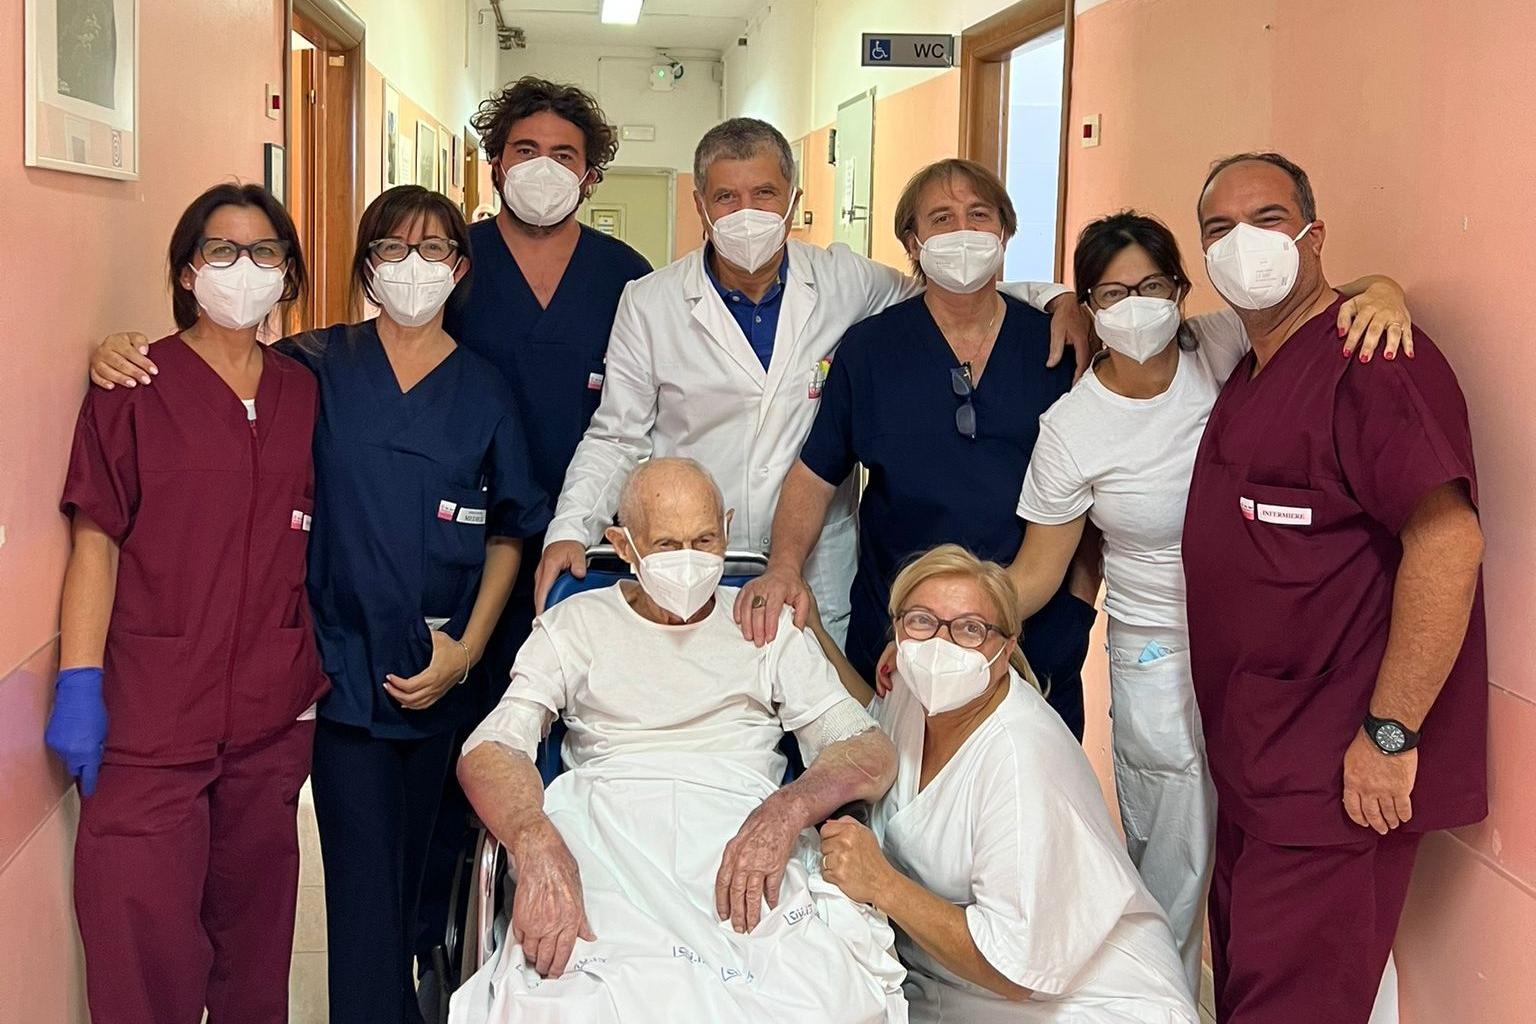 Giovanni Doppiu con lo staff dell'ospedale dopo l'intervento (Foto Puglia Salute)